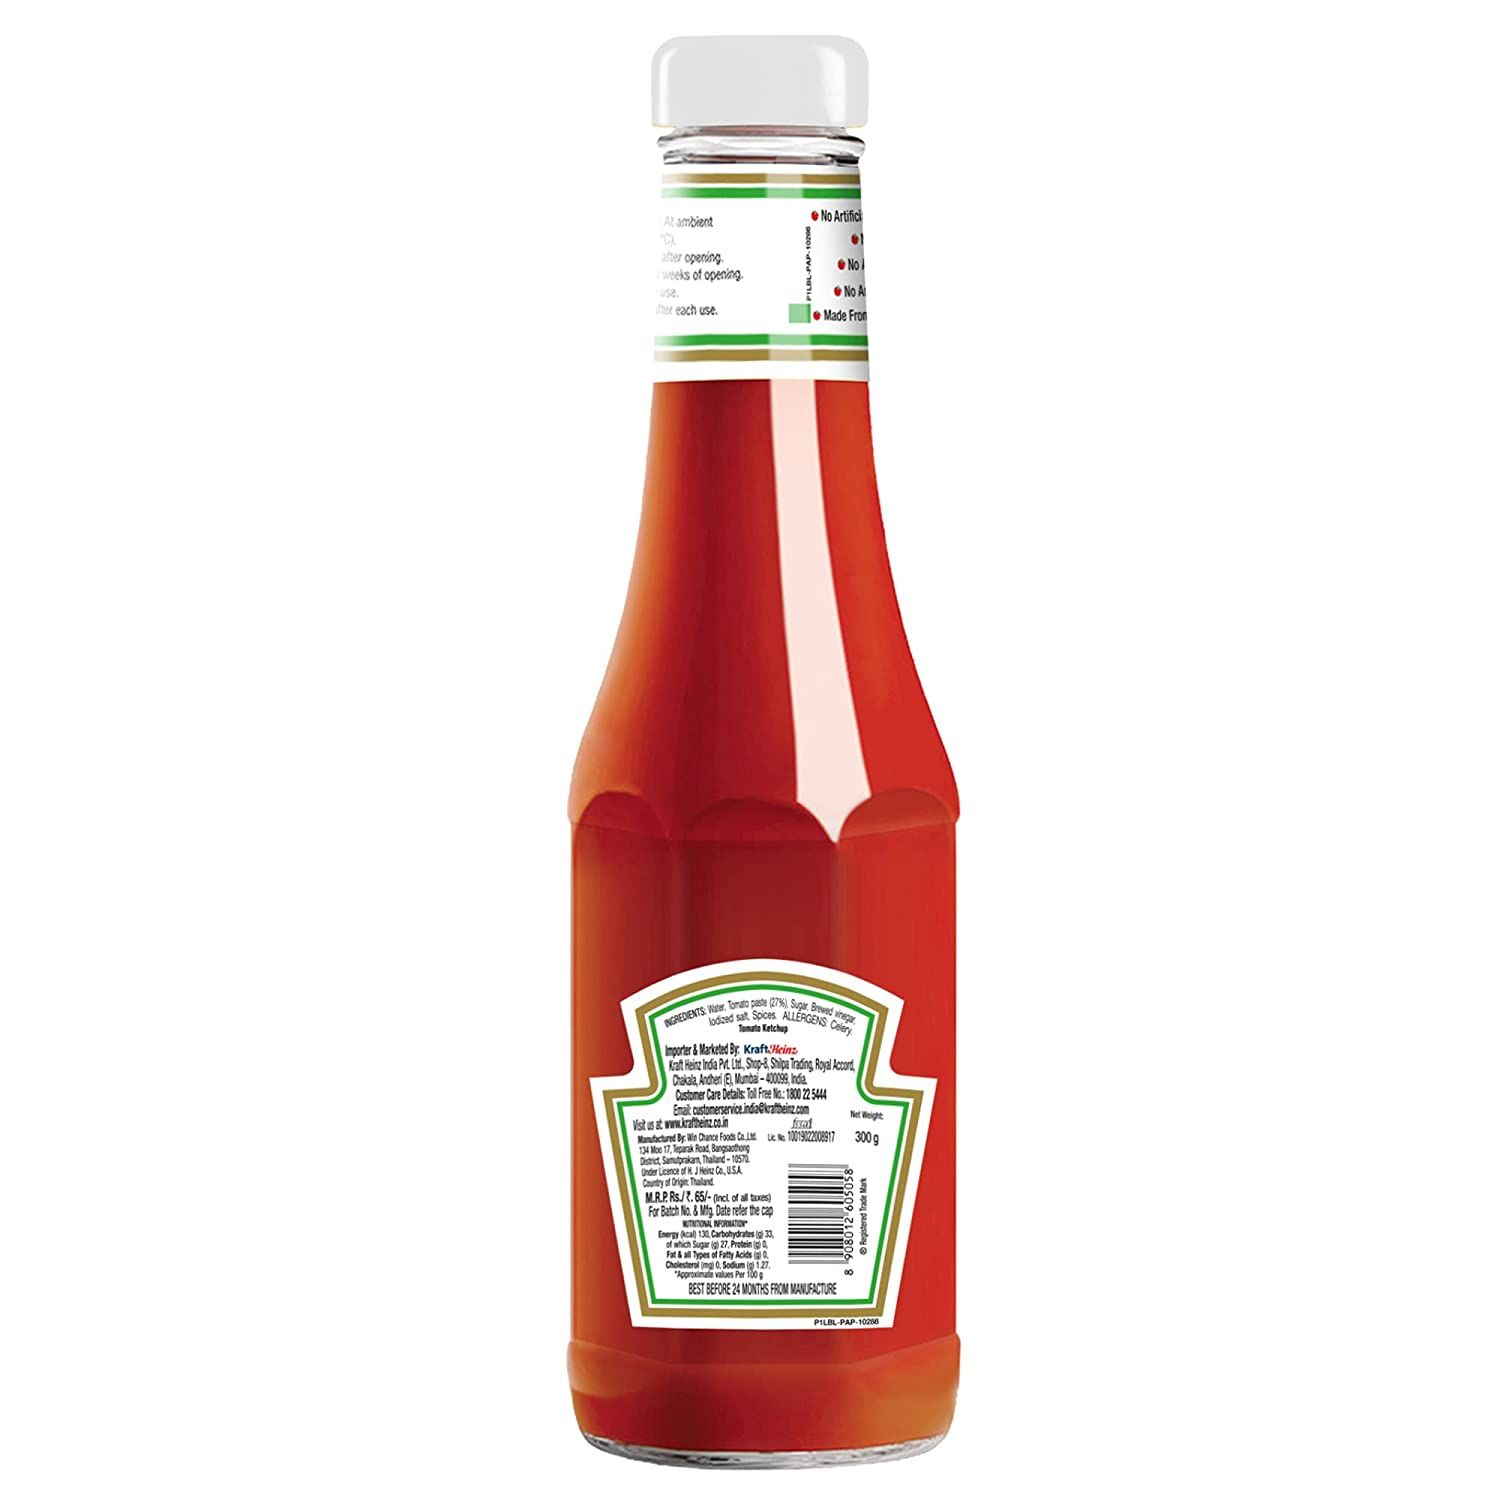 Heinz Tomato Ketchup Image